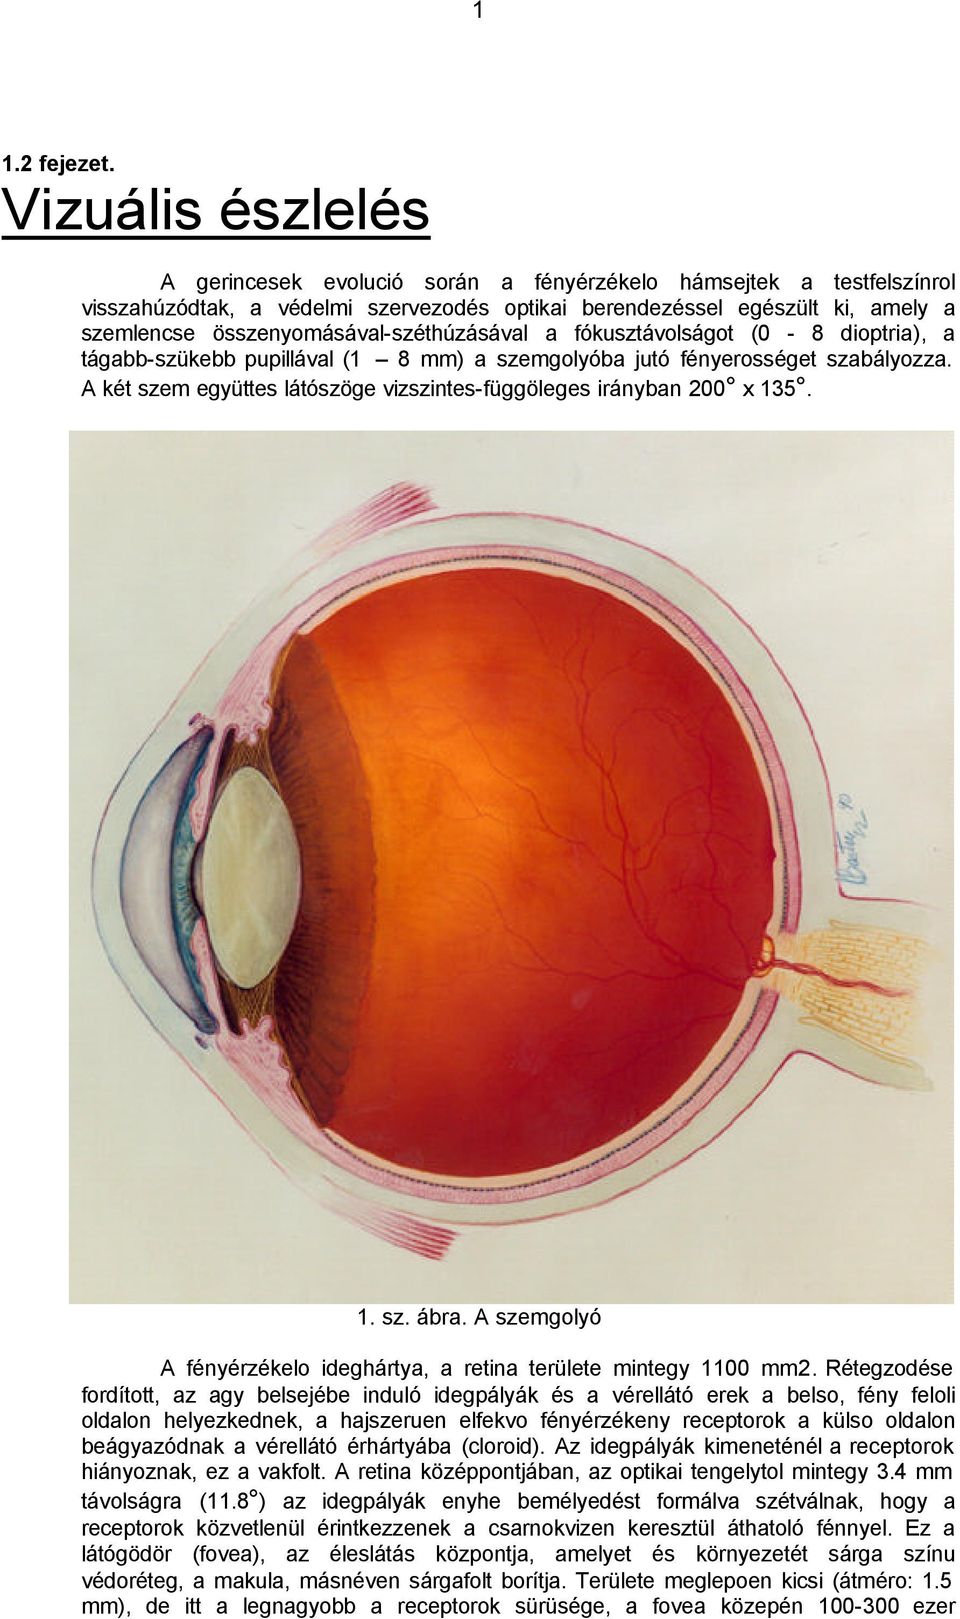 összenyomásával-széthúzásával a fókusztávolságot (0-8 dioptria), a tágabb-szükebb pupillával (1 8 mm) a szemgolyóba jutó fényerosséget szabályozza.